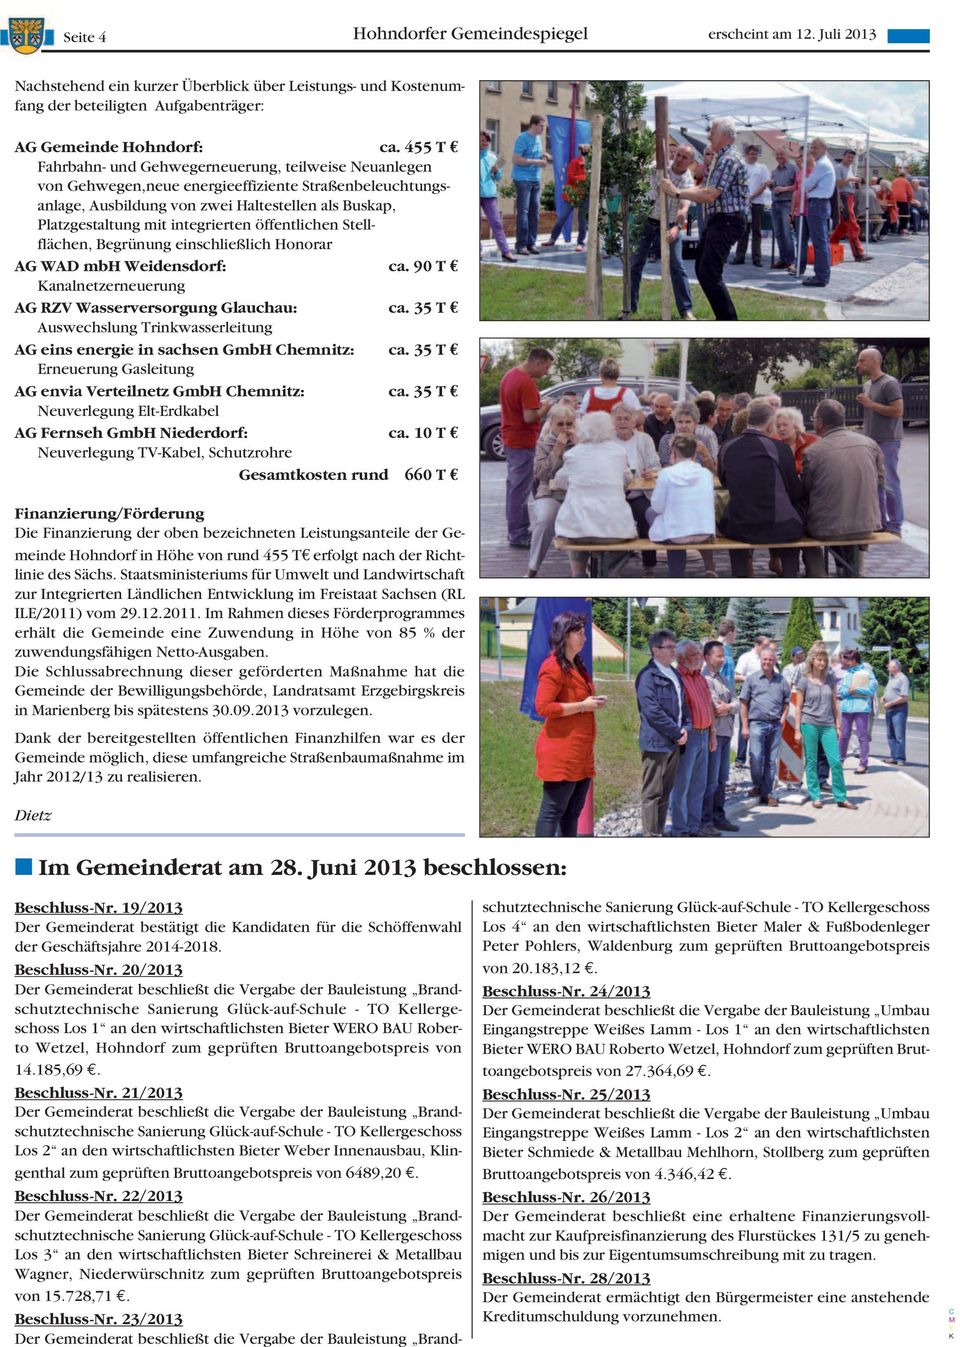 öffentlichen Stellflächen, Begrünung einschließlich Honorar AG WAD mbh Weidensdorf: ca. 90 T analnetzerneuerung AG RZV Wasserversorgung Glauchau: ca.